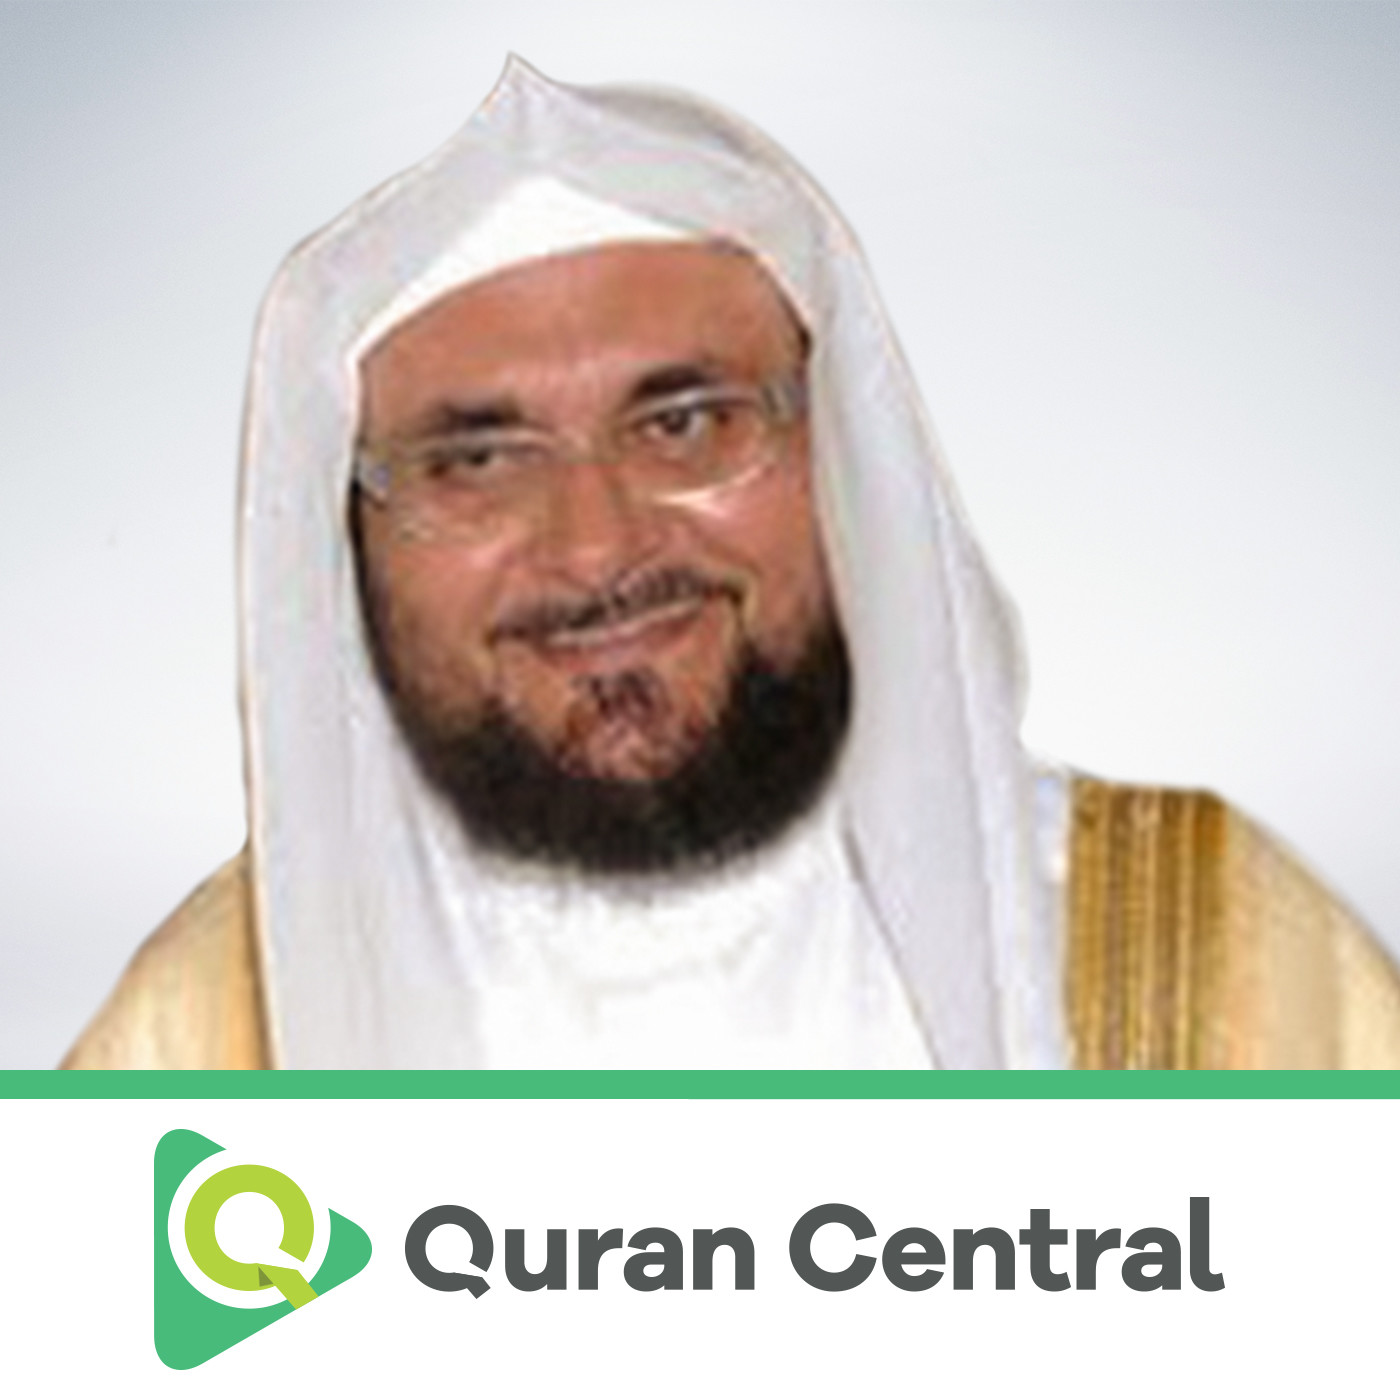 Sheikh abdul wadood haneef